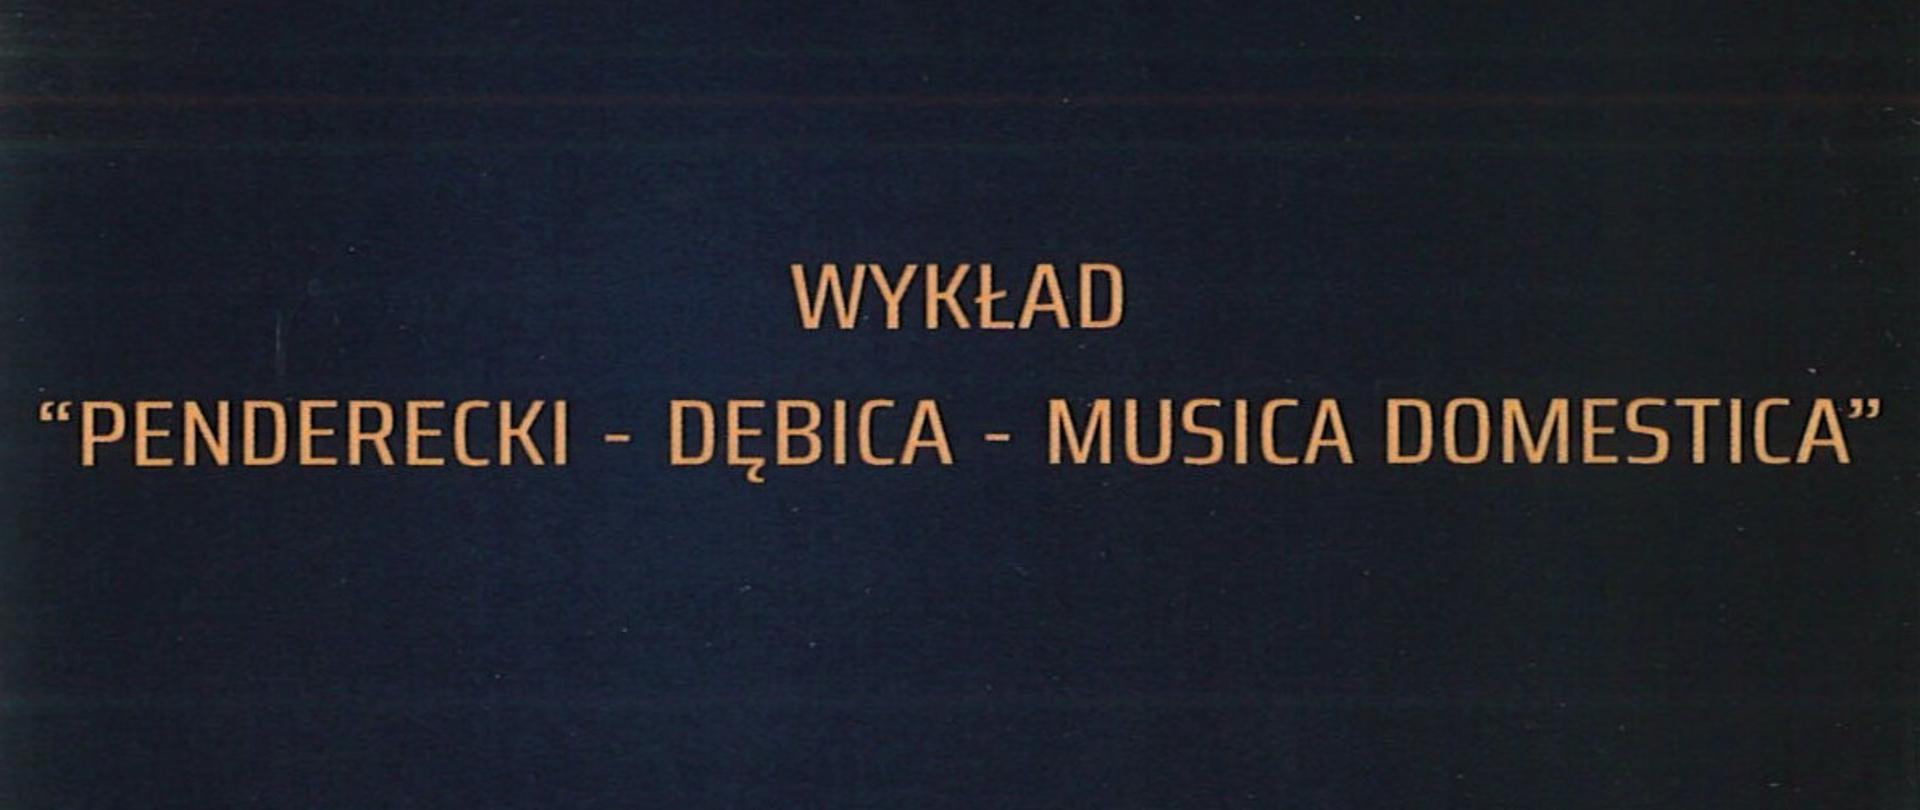 Plakat z wydarzeniem - Wykład "Penderecki - Dębica - Musica Domestica" , napisy znajdują się na czarny tle, w górnym prawym roku znajduje się logo Urzędu Miasta, po lewej stronie umieszczono datę i godzinę wykładu, który organizowany jest w ramach Międzynarodowego Festiwalu Dębickie Korzenie Krzysztof Penderecki In Memorian 